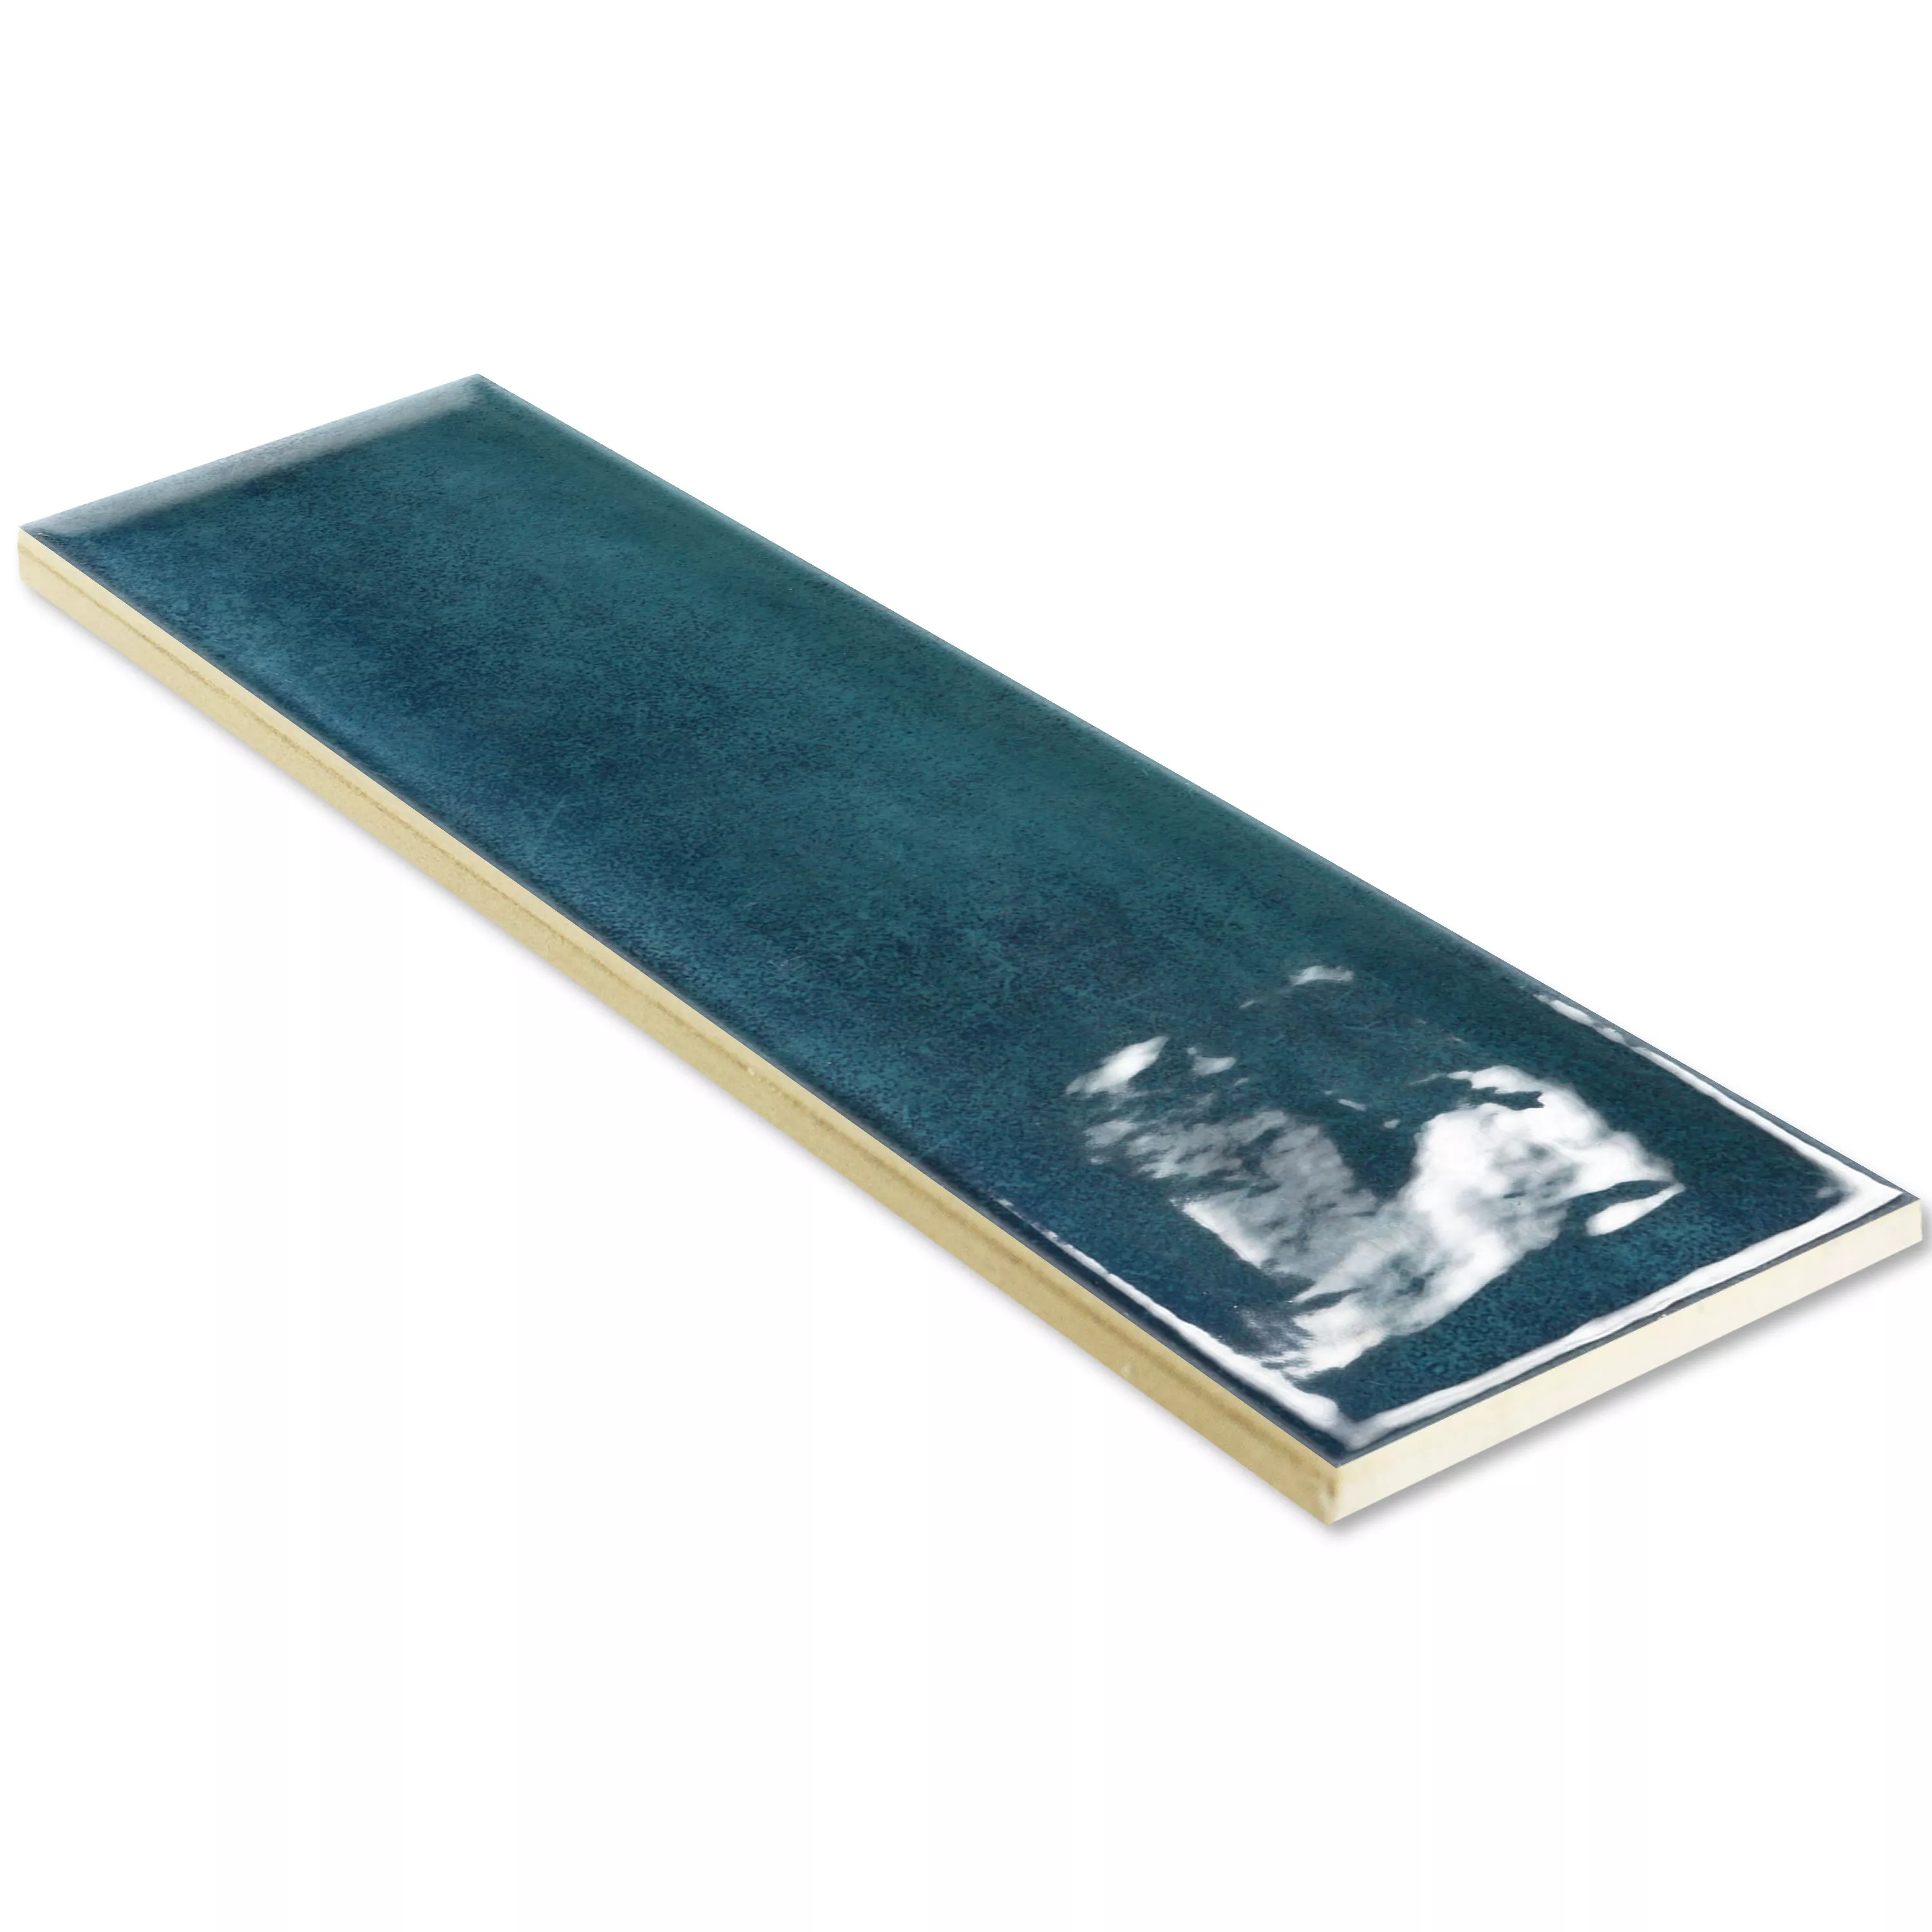 Πλακάκια Tοίχου Pascal Αστραφτερό Μέσα Όψη Μπλε Tου Ειρηνικού 7,5x30cm